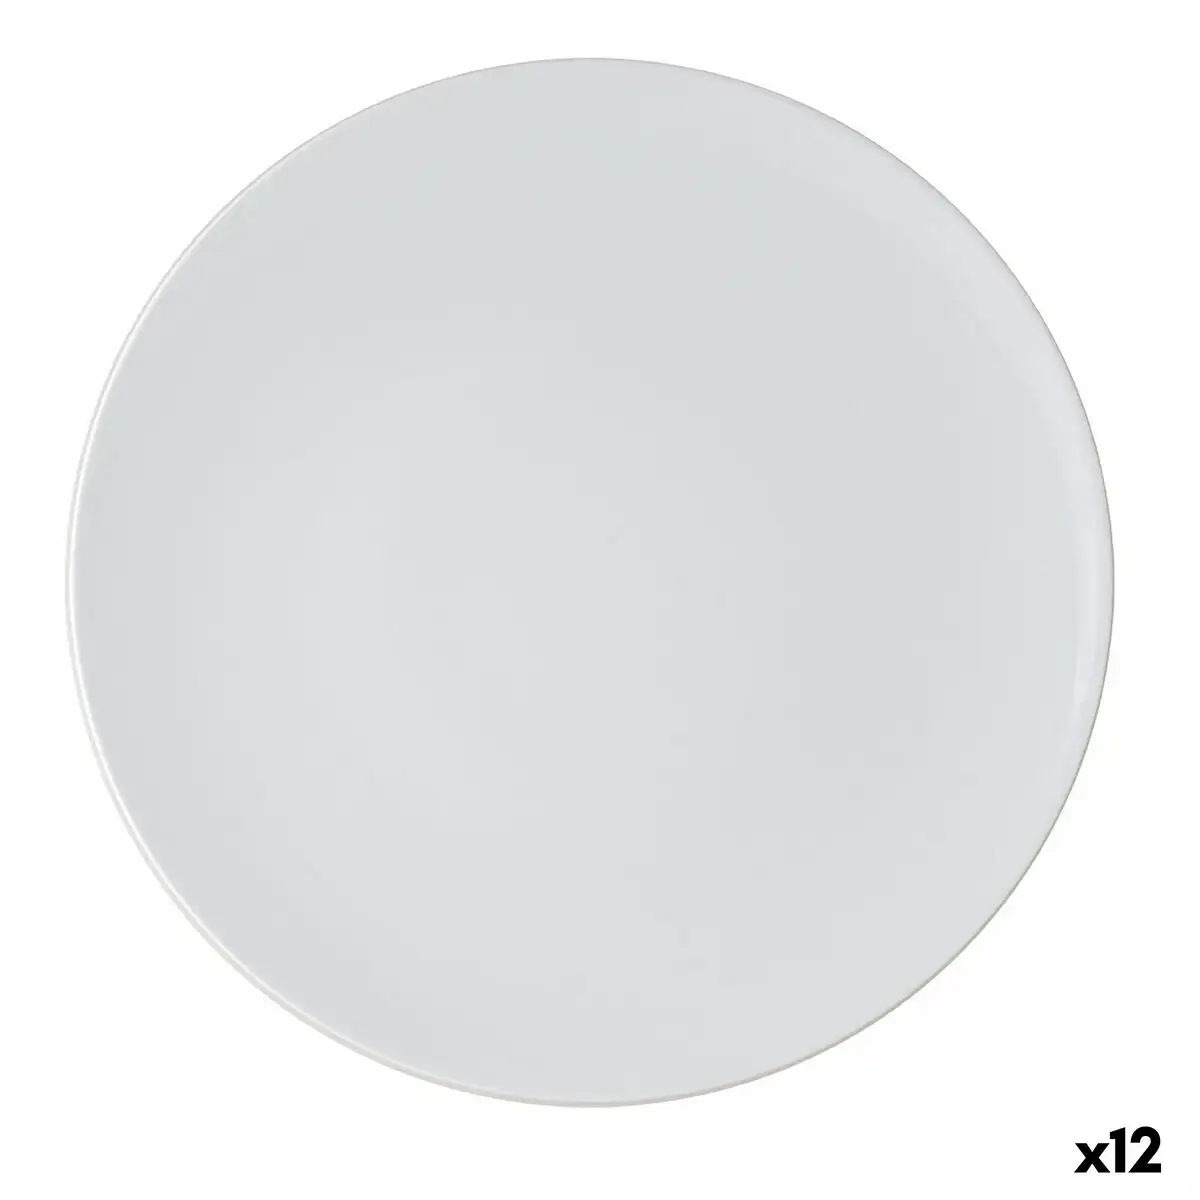 Assiette plate ariane coupe ceramique blanc o 17 cm 12 unites _2135. DIAYTAR SENEGAL - Là où la Beauté Rencontre la Fonctionnalité. Parcourez notre sélection pour trouver des produits qui allient esthétique et praticité, pour un quotidien sublimé.